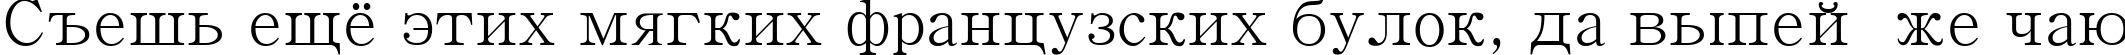 Пример написания шрифтом Batang текста на русском